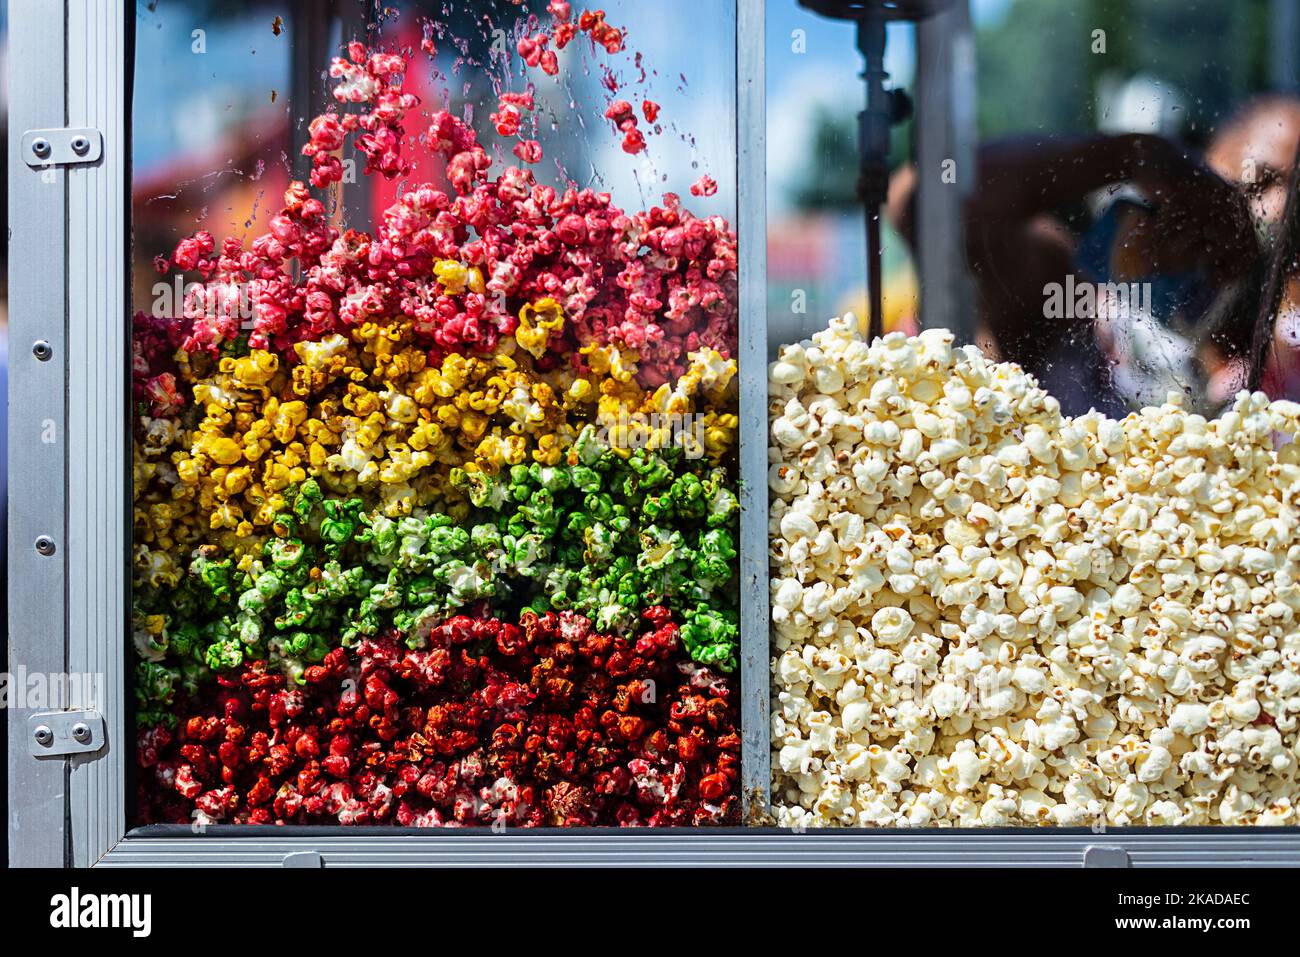 Popcorn-koneet myytävänä paikkakunnalla Milano, Facebook Marketplace